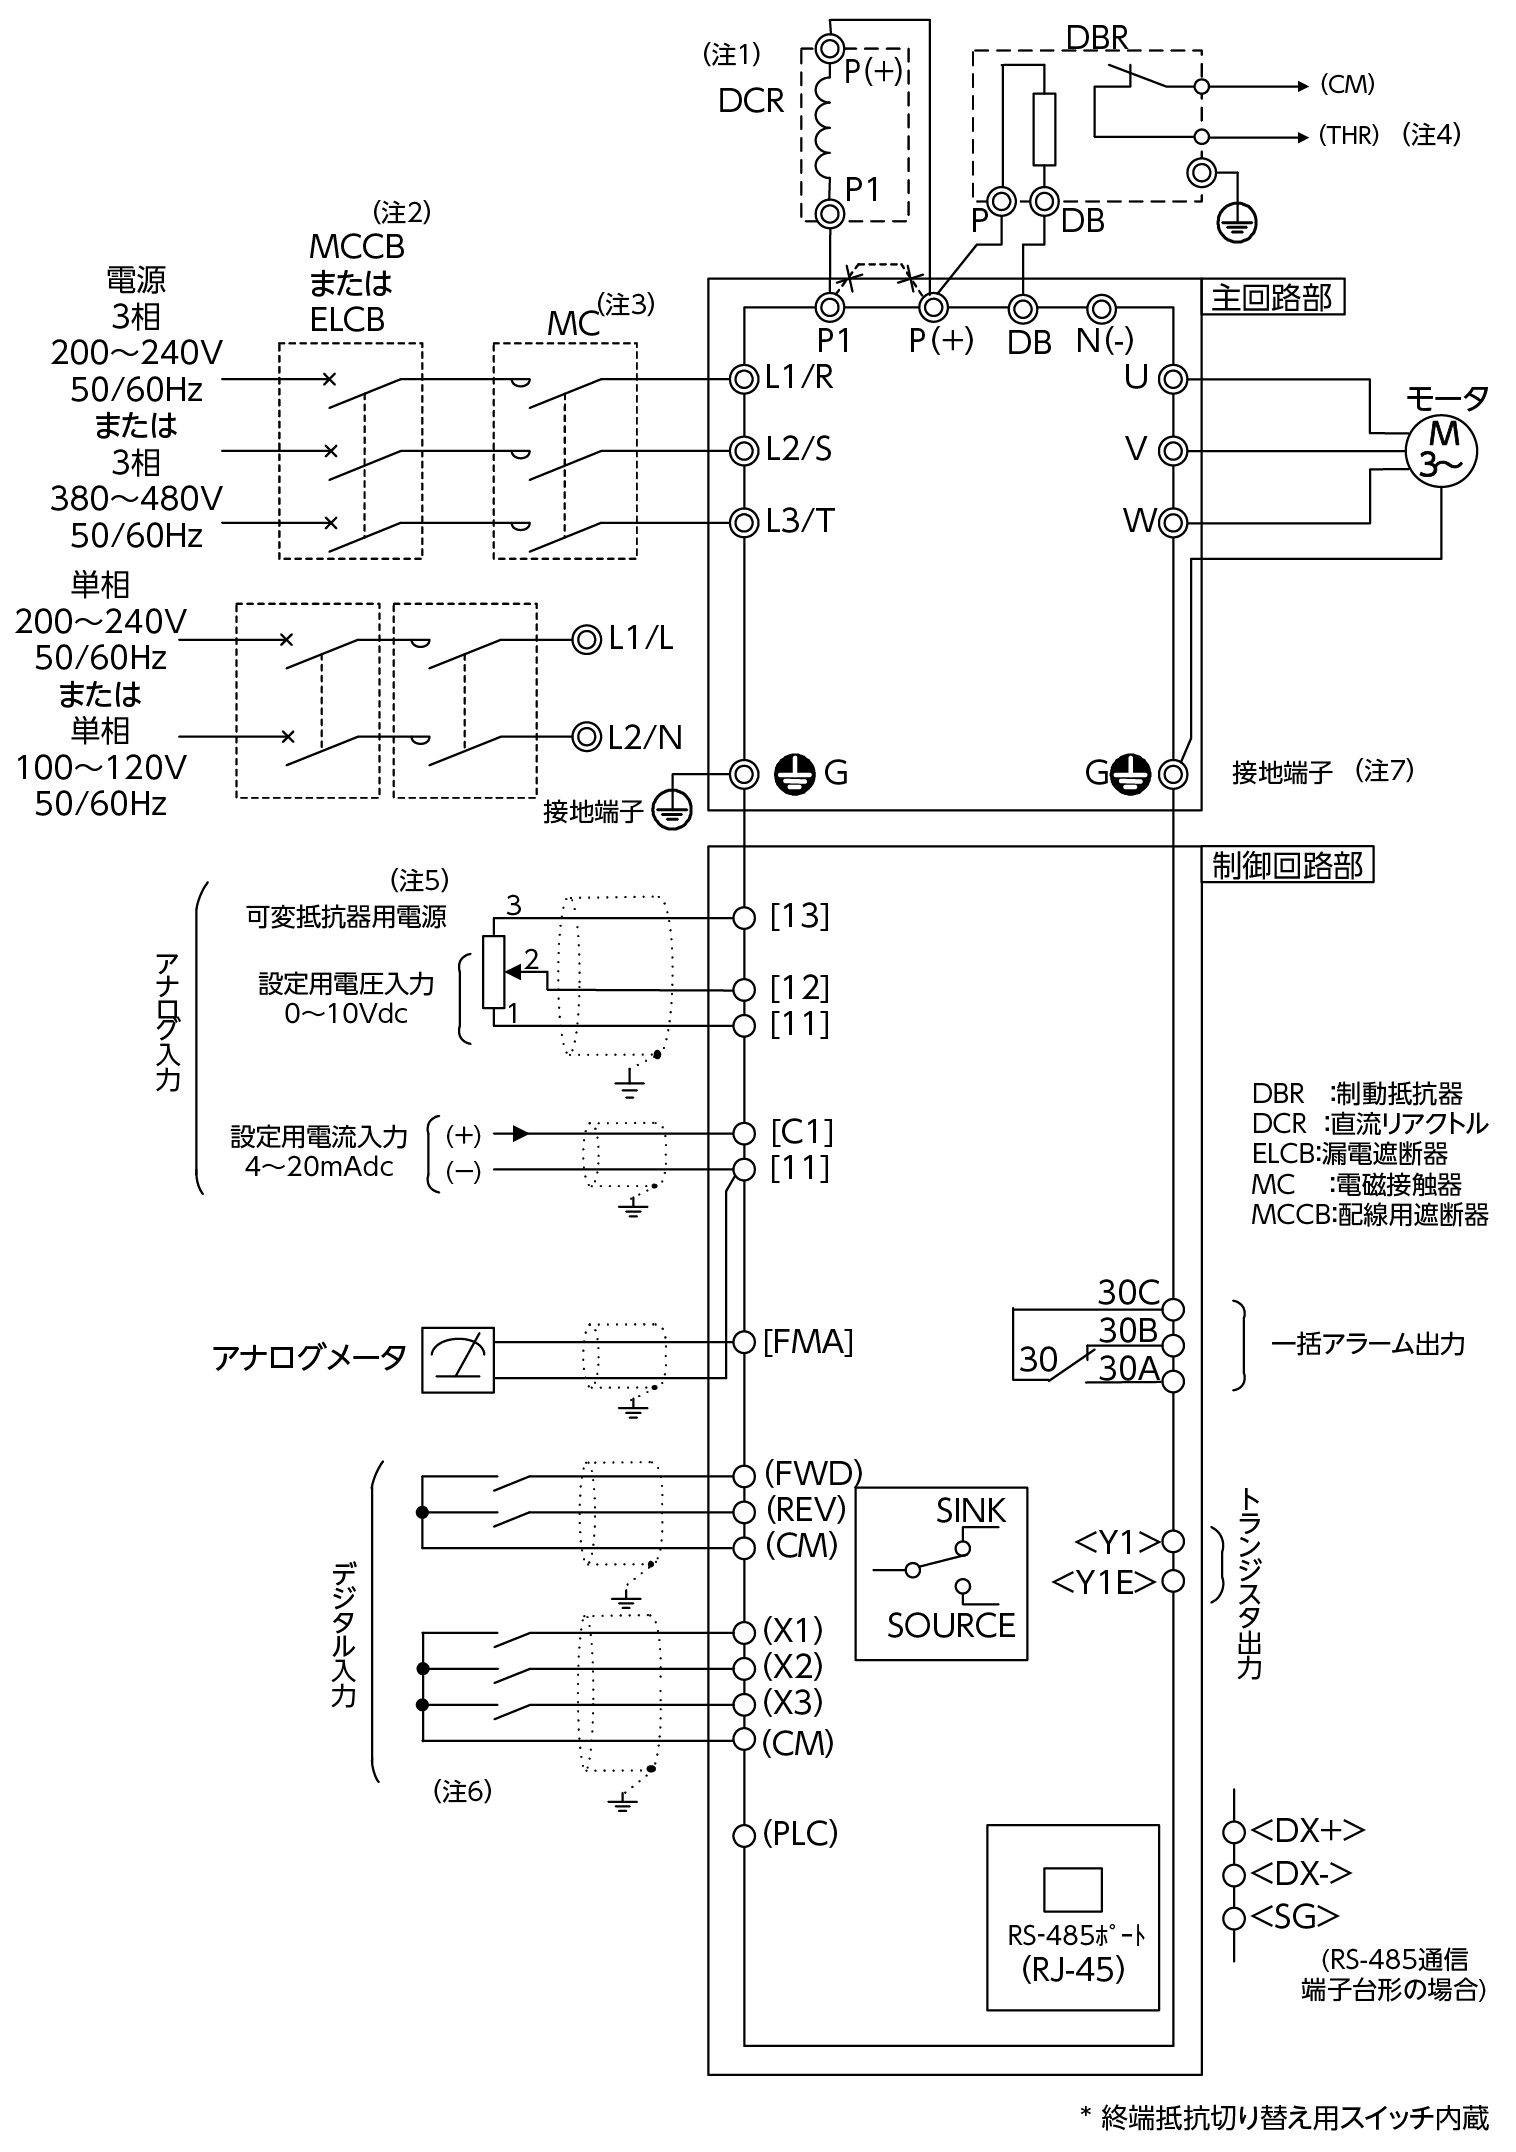 FRN11C2S-2Jの接続図